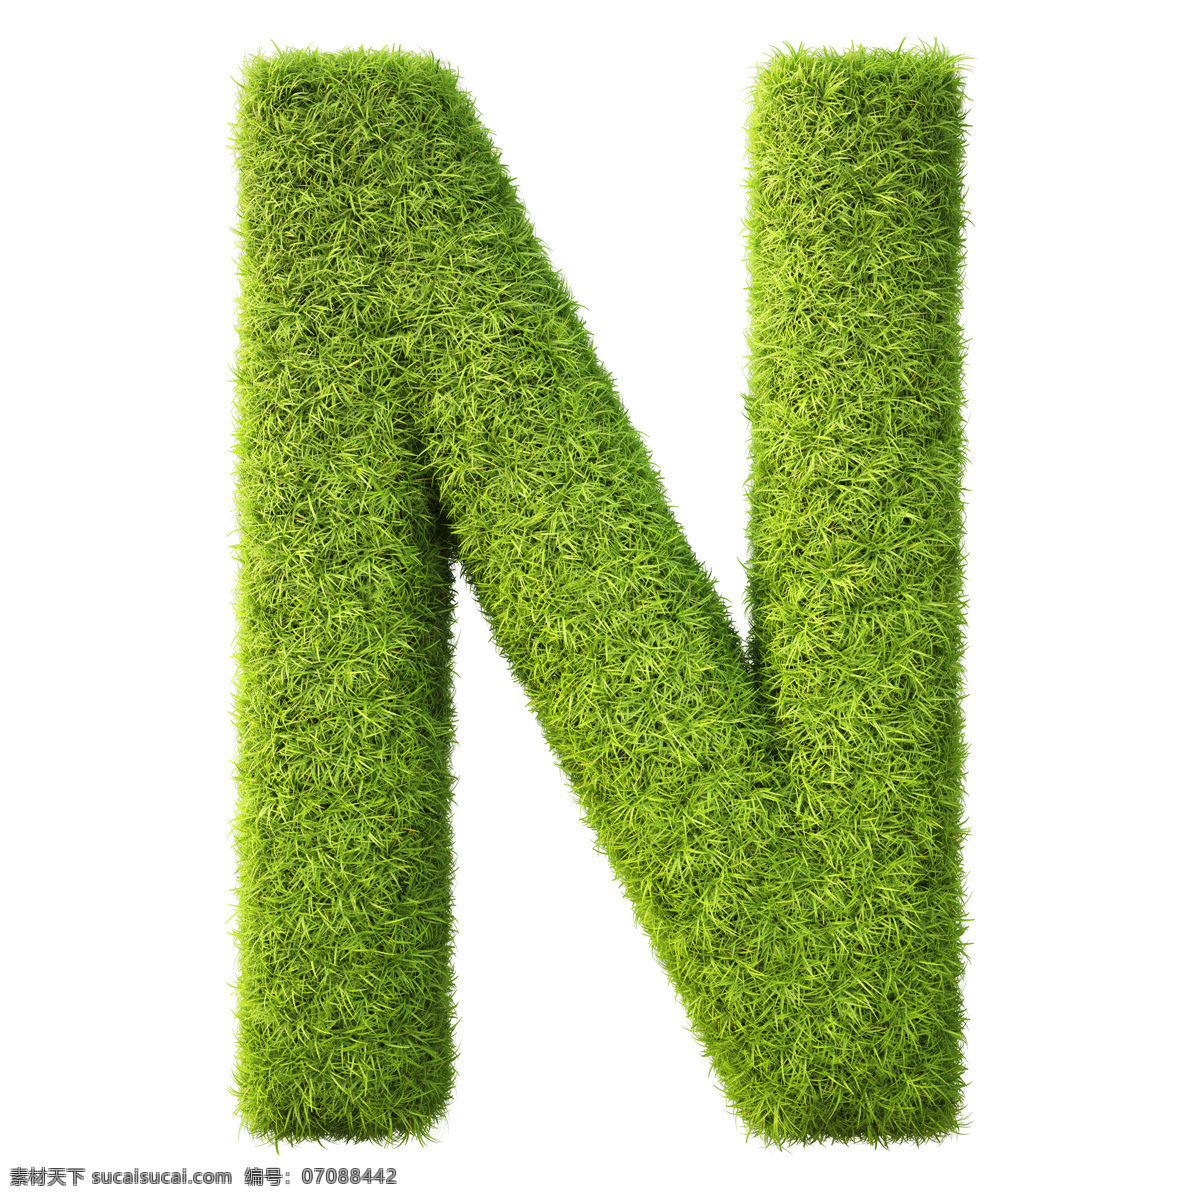 时尚 手绘 装饰 字母 字母设计 设计素材 模板下载 绿草字母 3d立体字母 数字主题 矢量图 艺术字